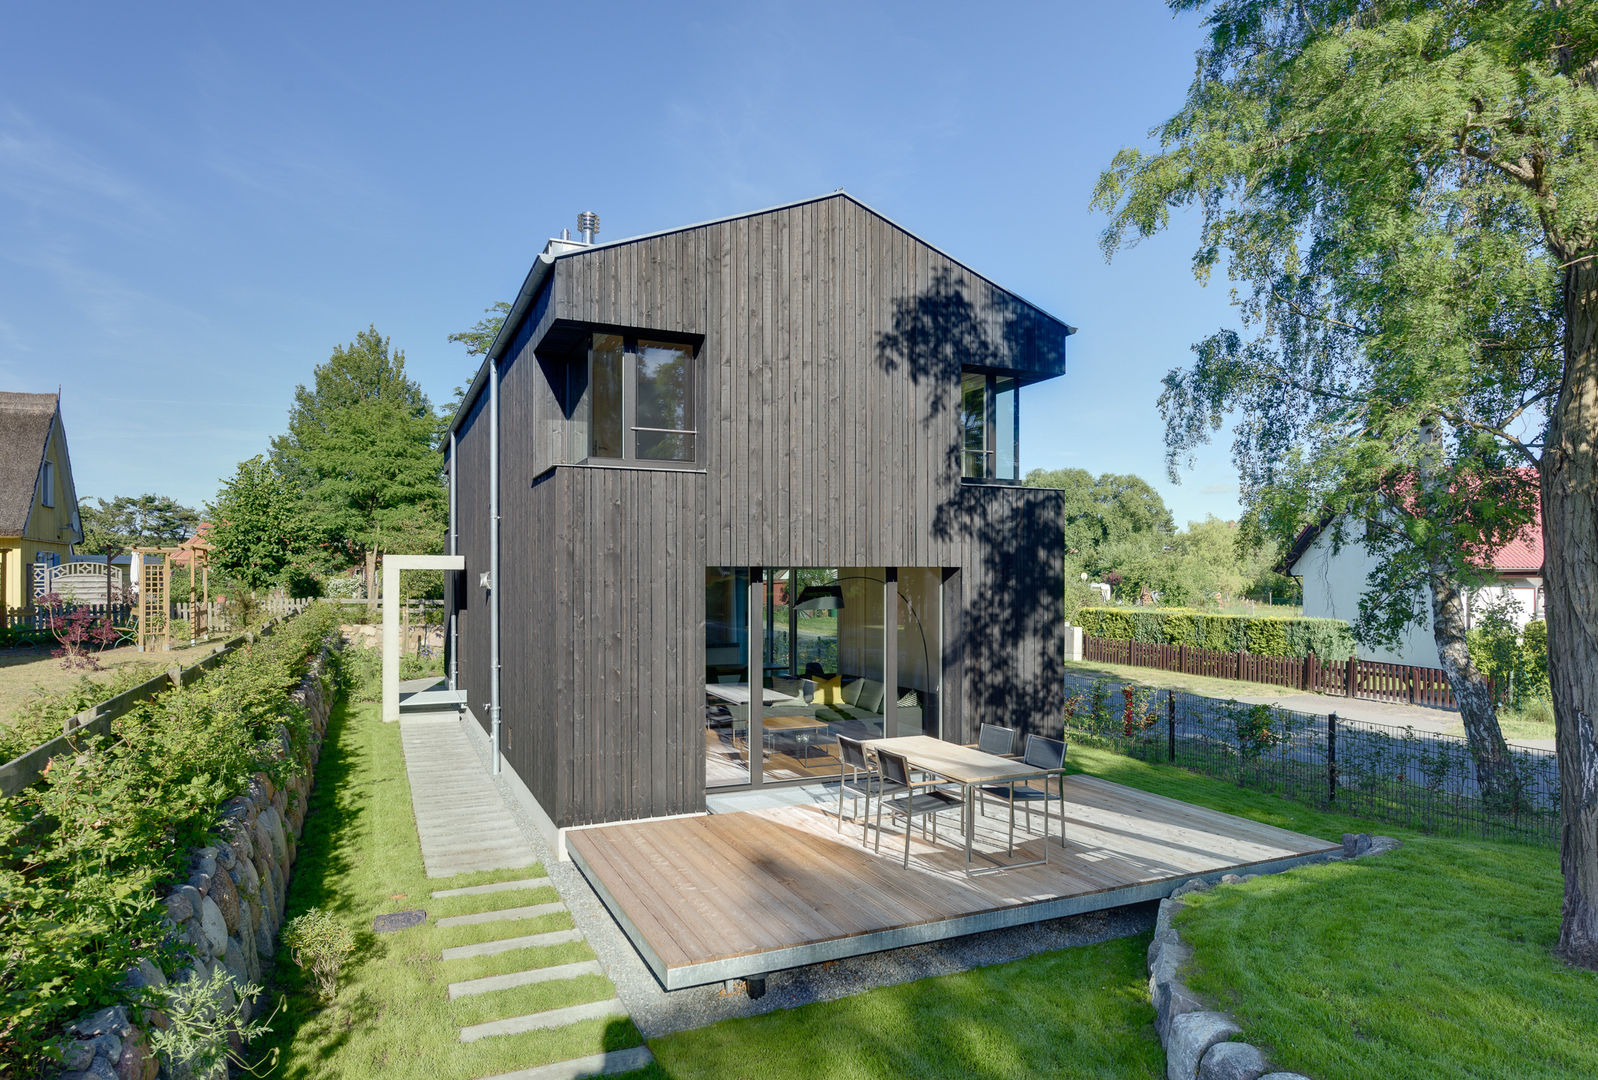 Modernes Ferienwohnhaus in Anlehnung an ein traditionelles Drempelhaus, Möhring Architekten Möhring Architekten سقف جمالون